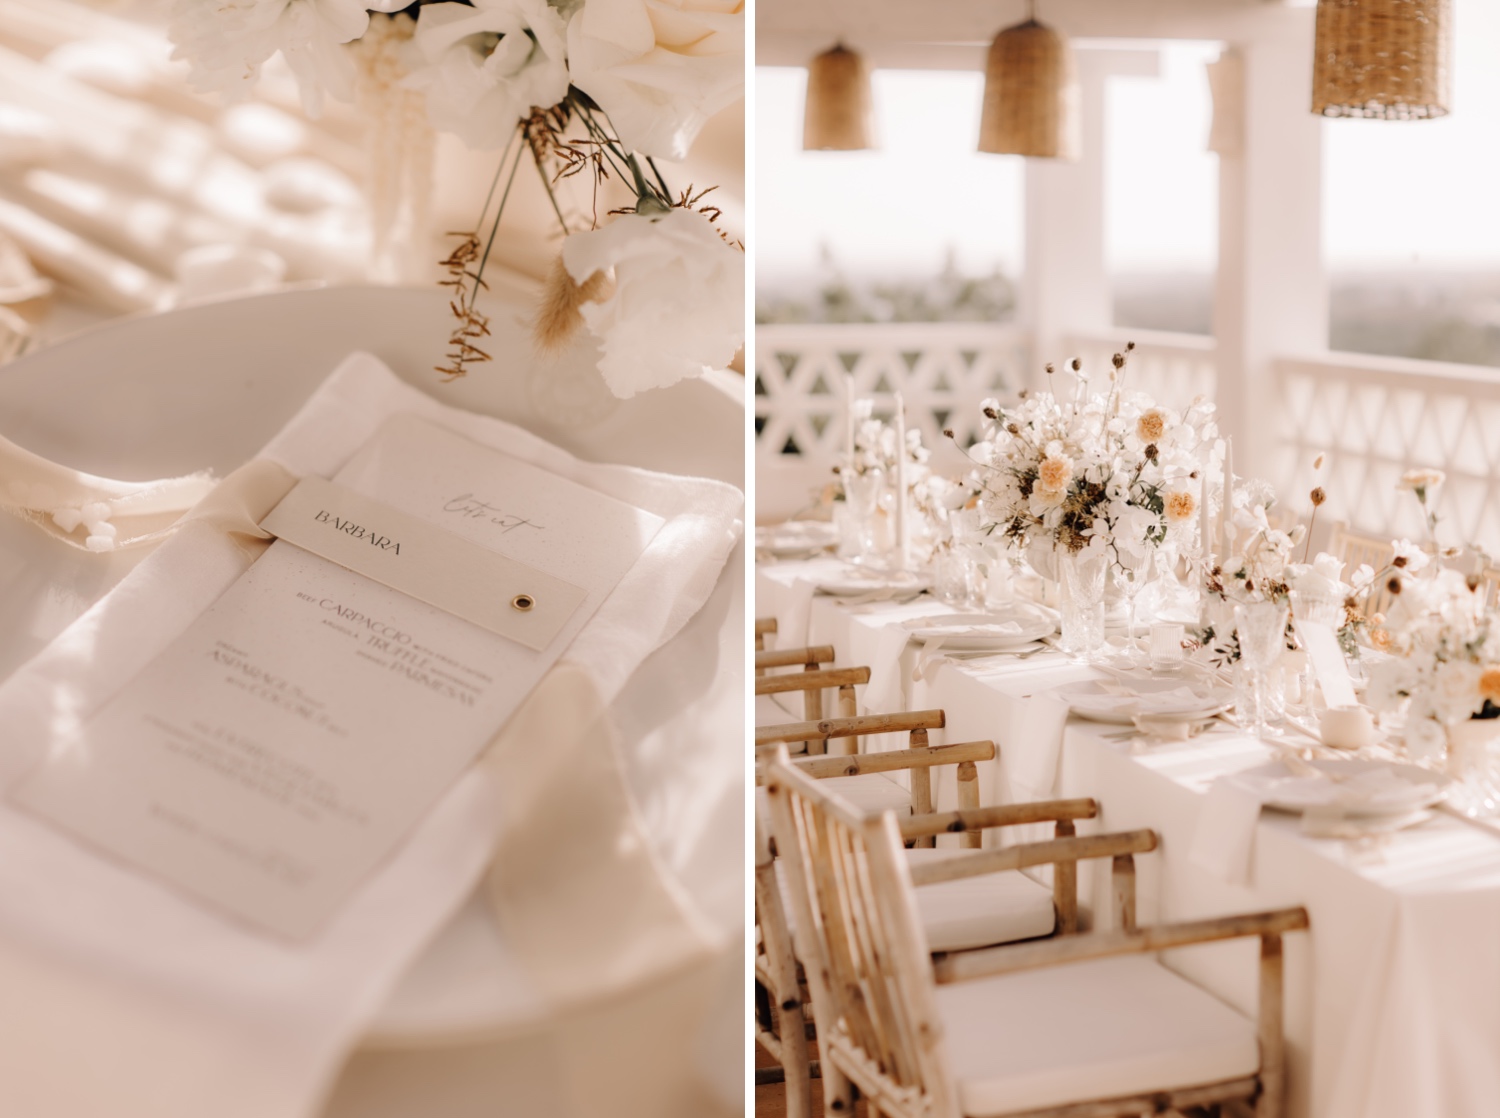 Huwelijksfotograaf buitenland - details van de prachtige tafelstyling in octant Vila Monte te Portugal